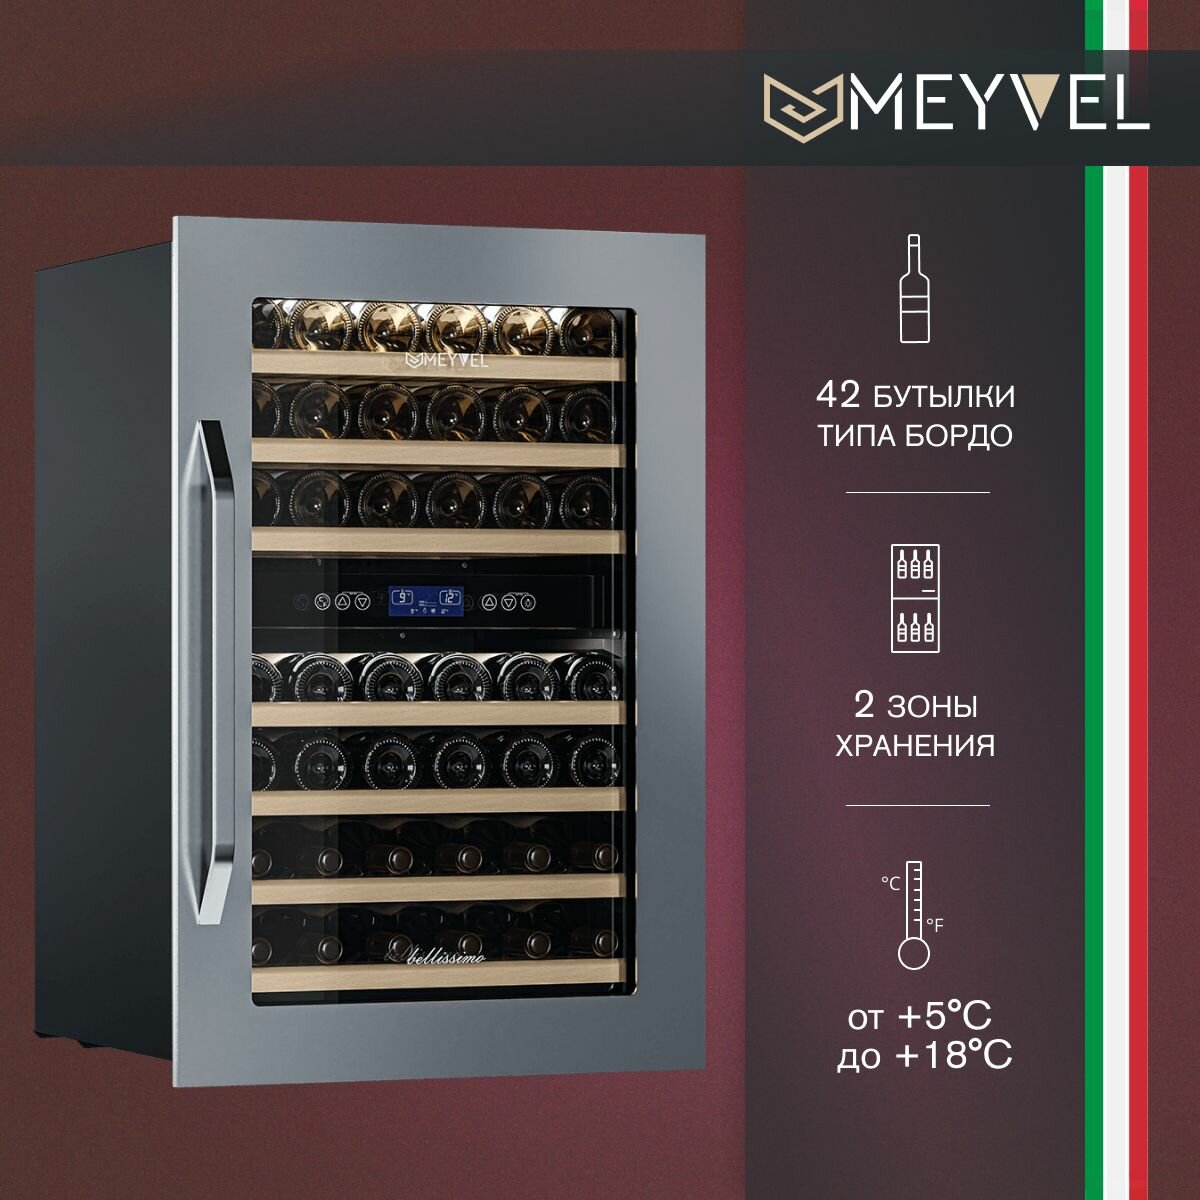 Винный шкаф Meyvel MV42-KSB2 (компрессорный встраиваемый холодильник для вина на 42 бутылки)